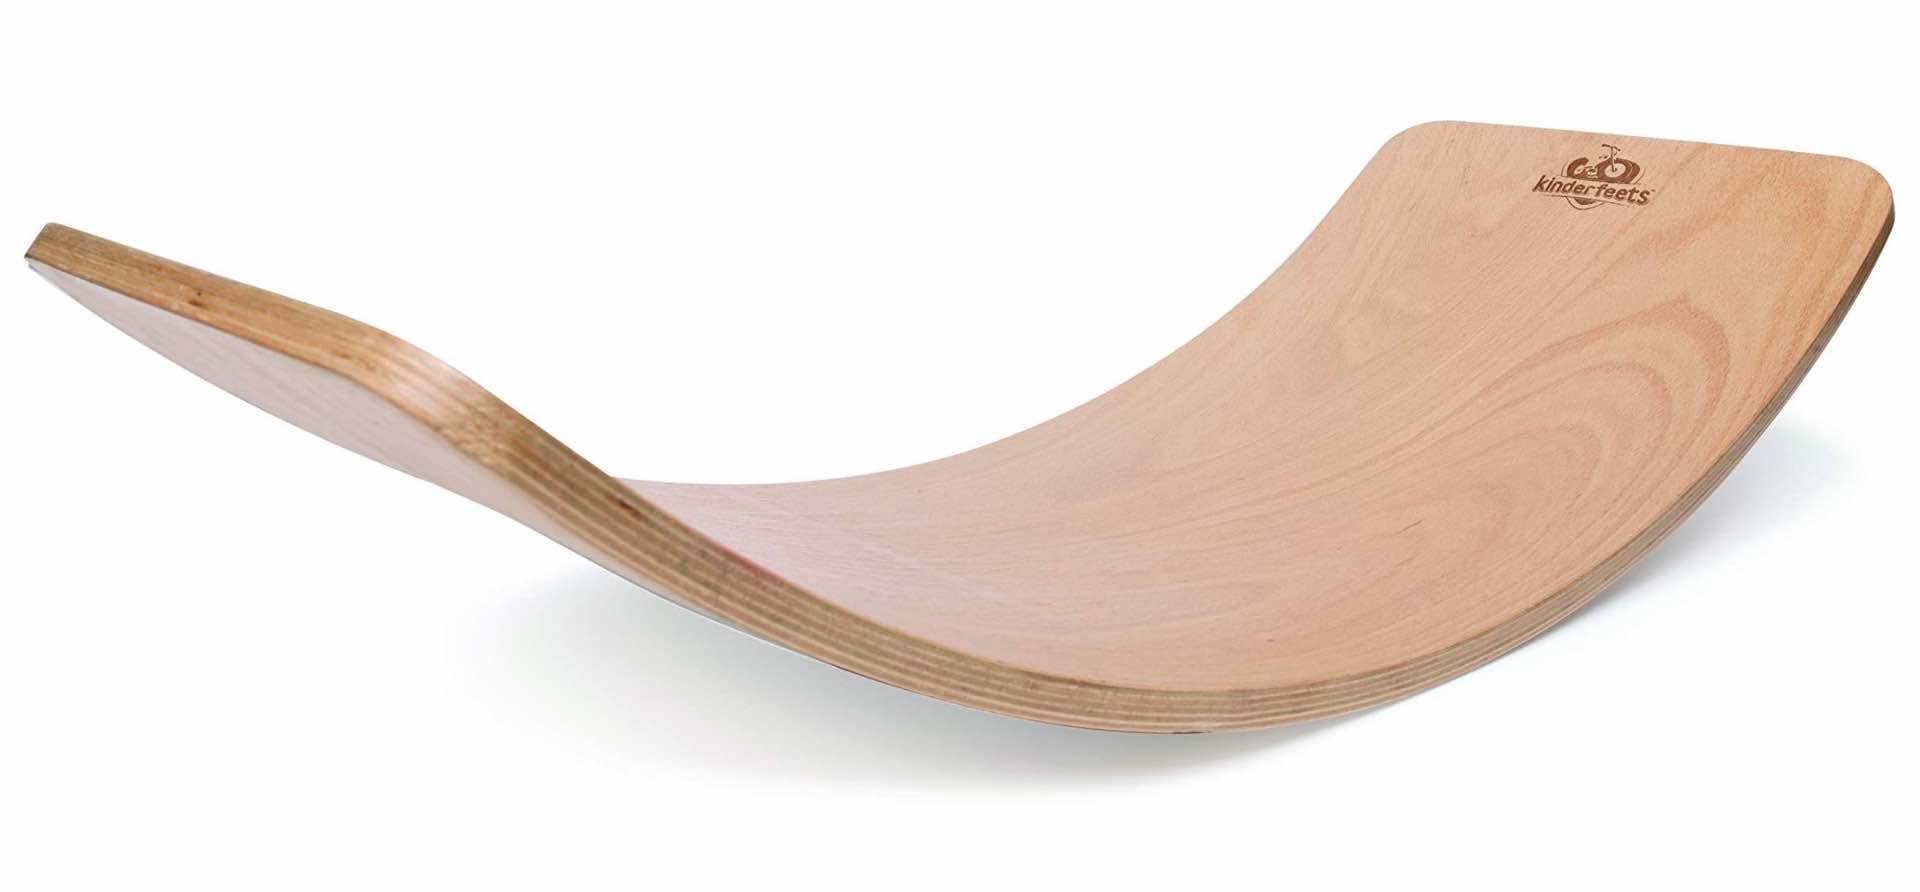 kinderfeets-kinderboard-curved-wooden-balance-board